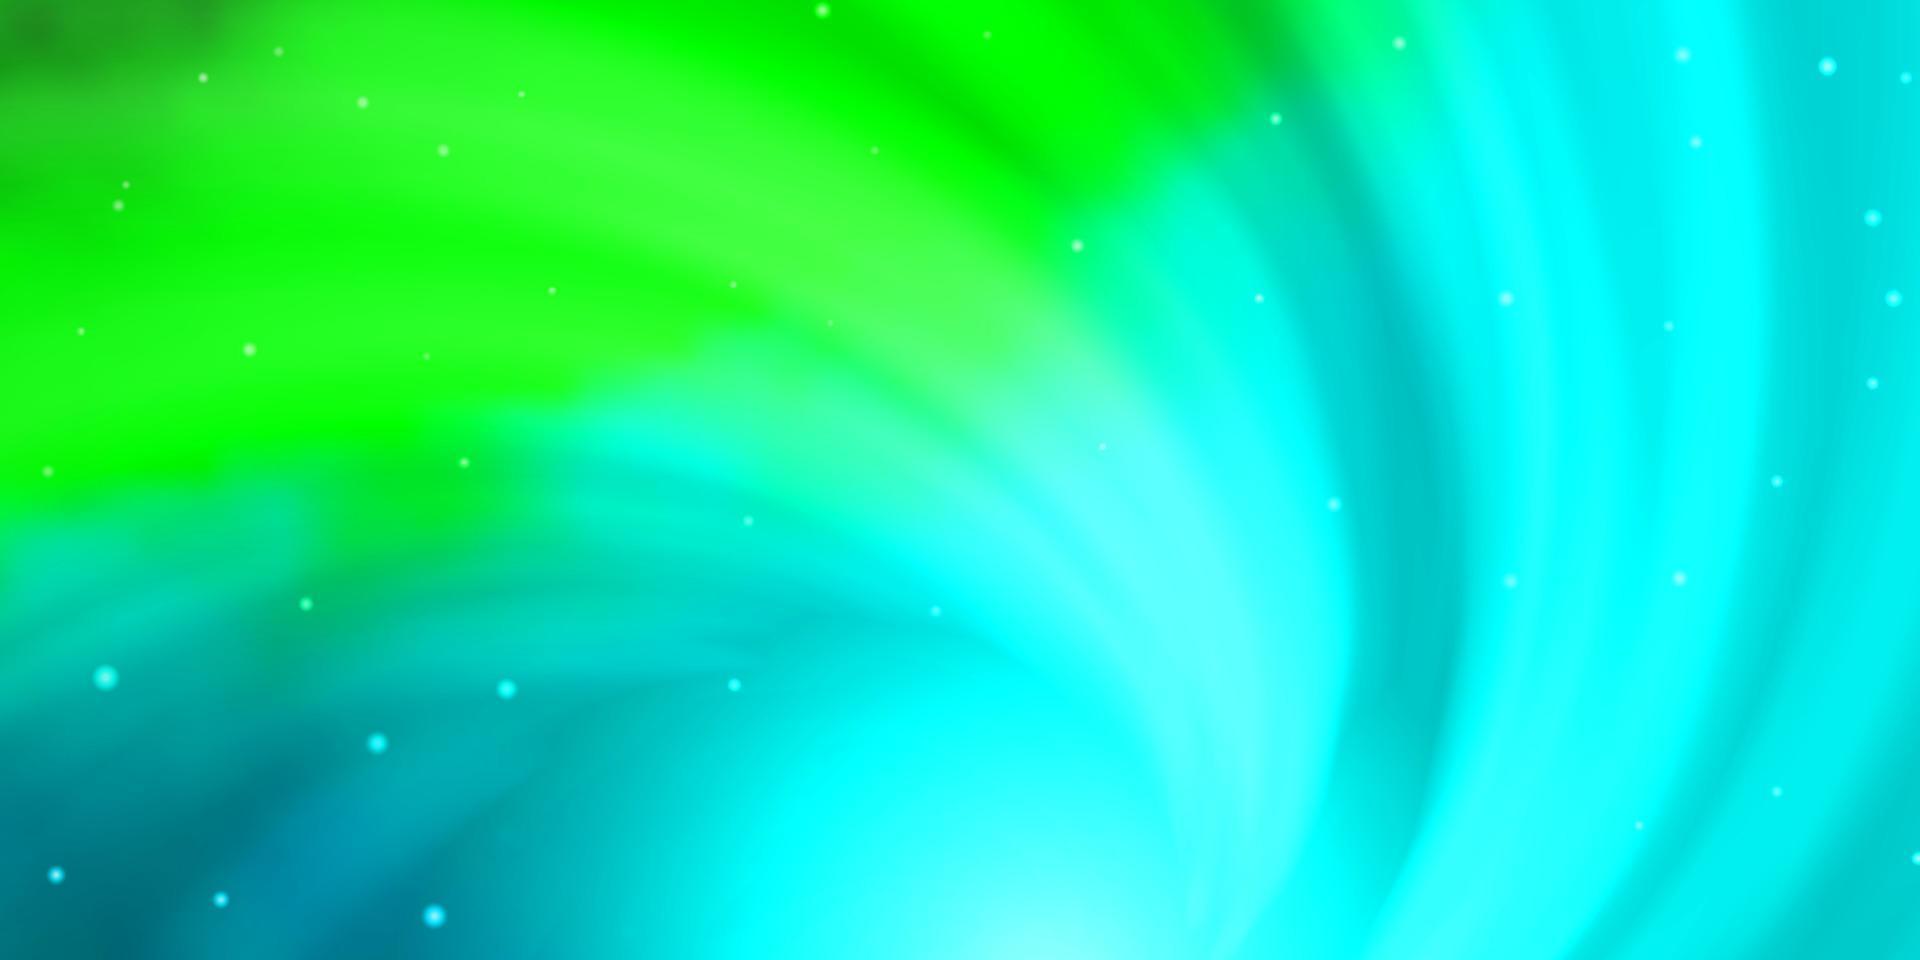 sfondo vettoriale azzurro, verde con stelle piccole e grandi.